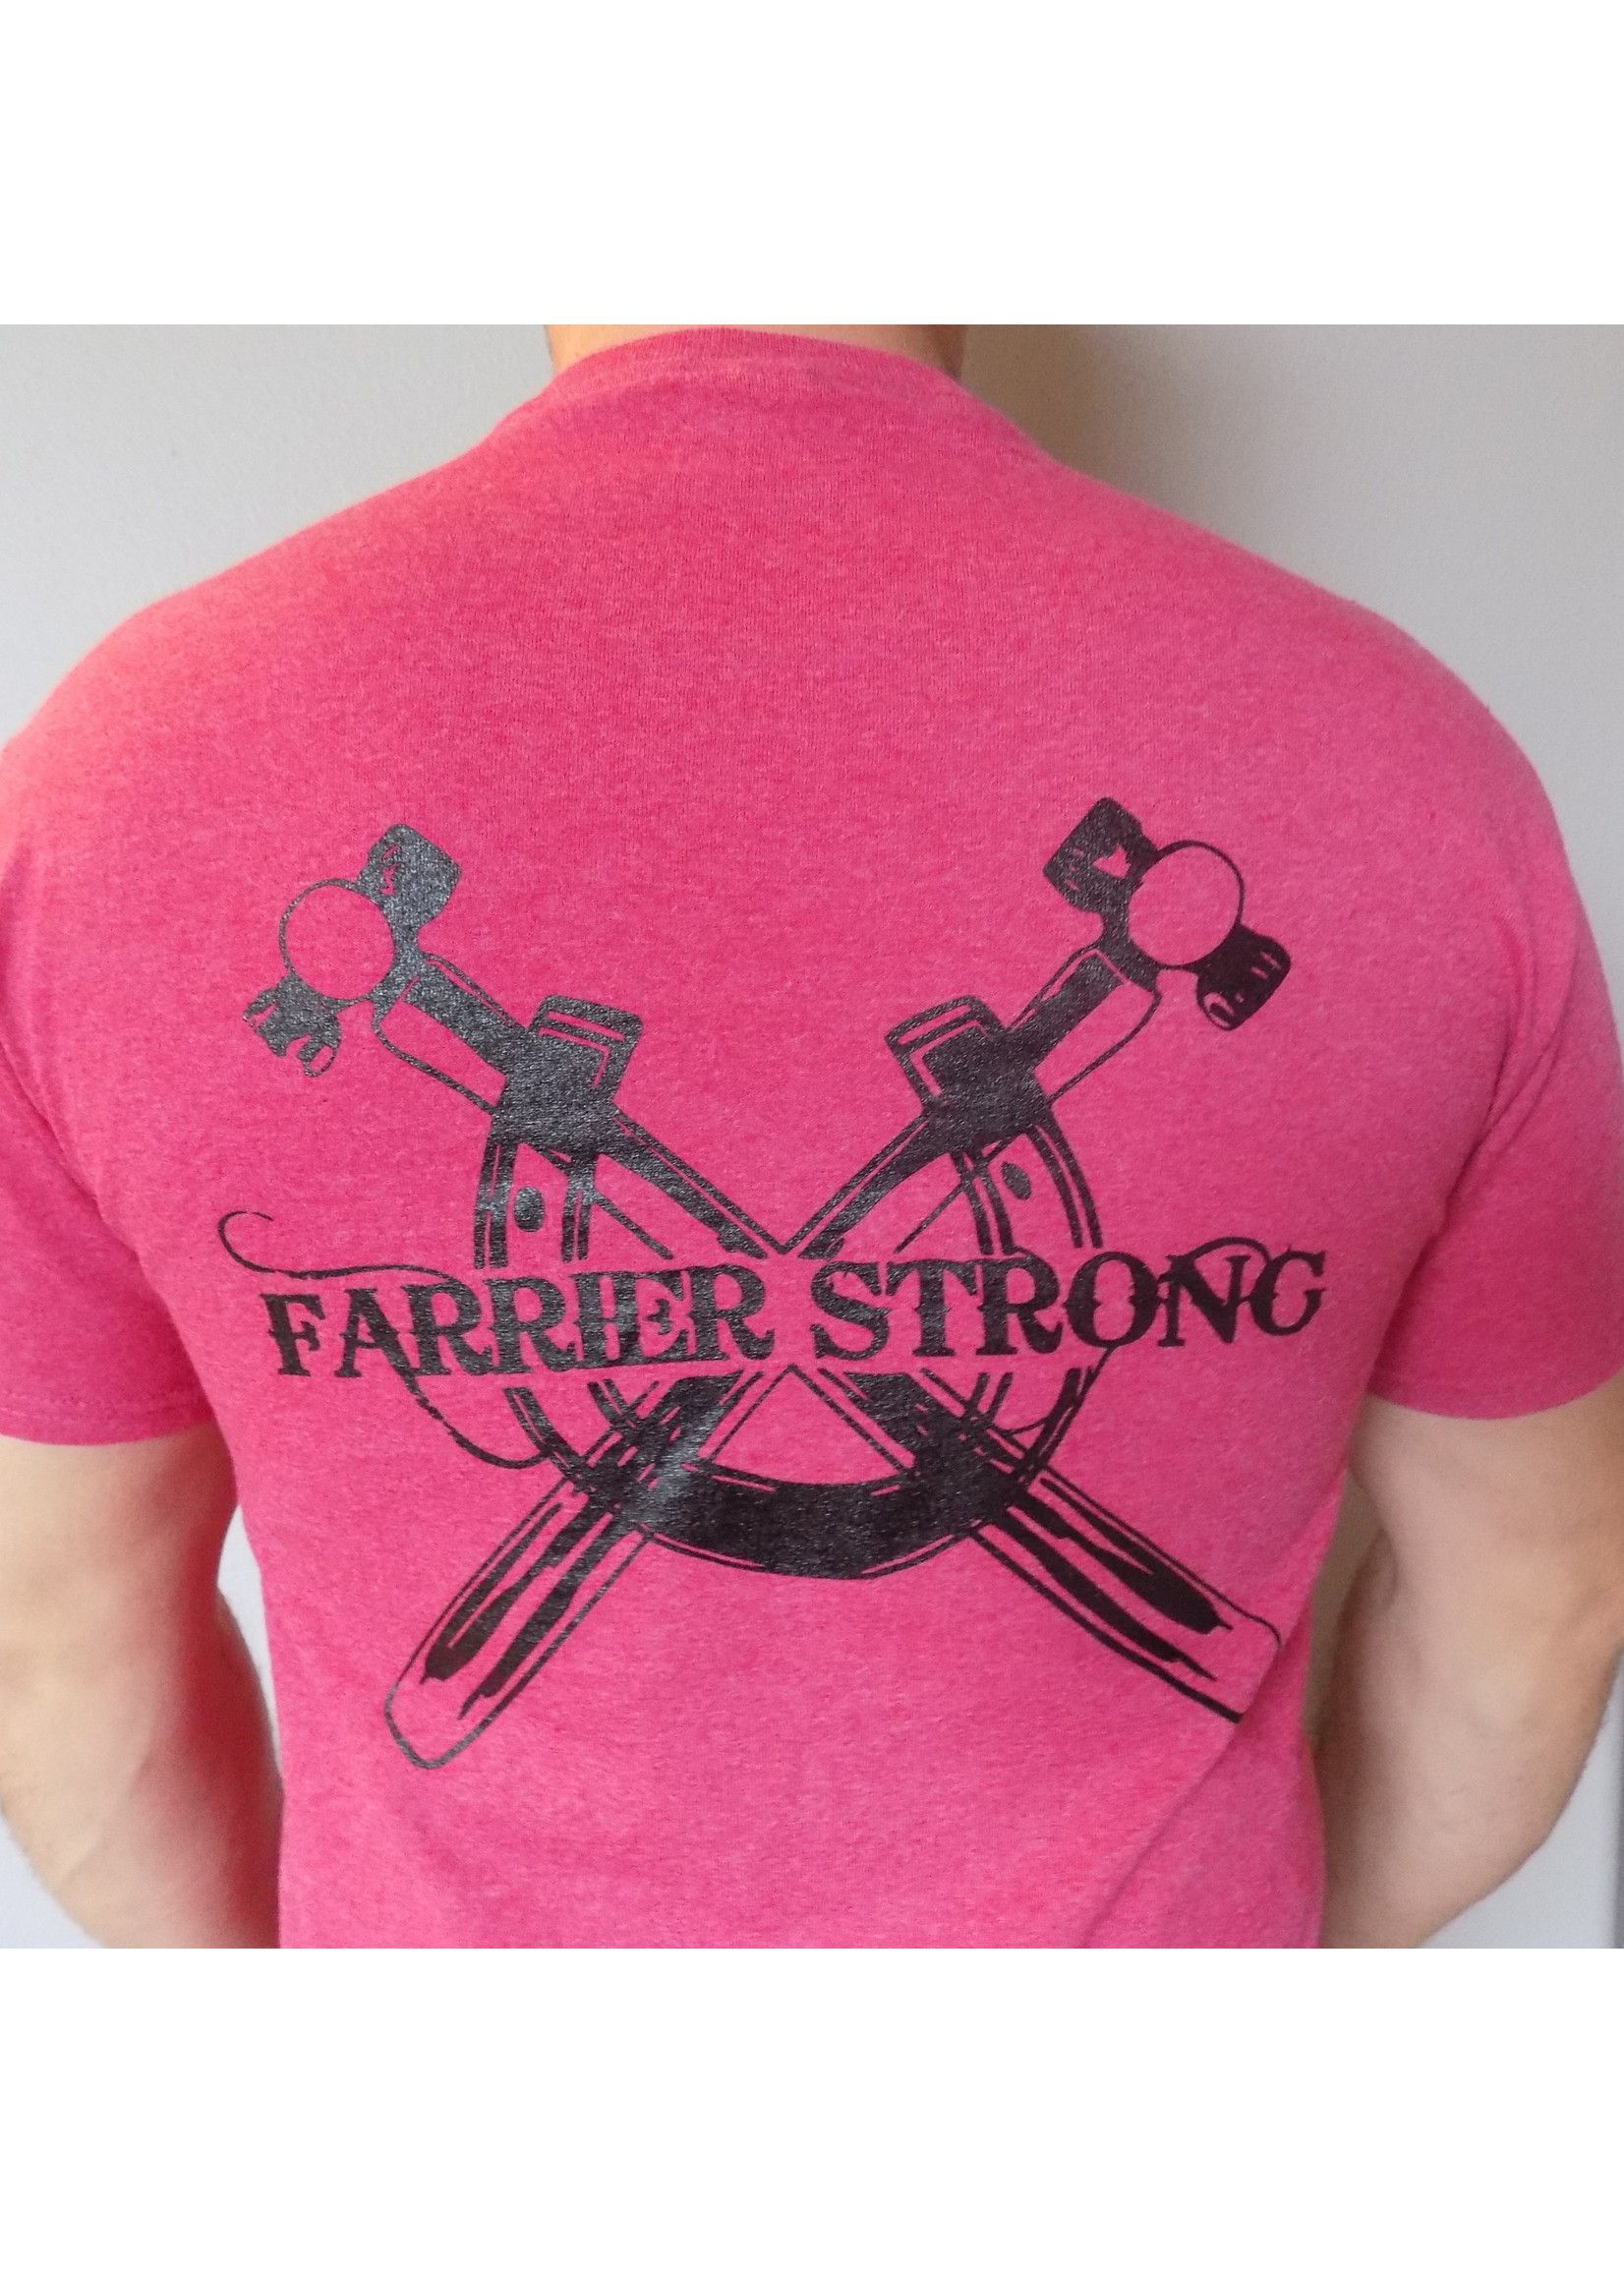 Farrier Strong Farrier Strong Tee Shirt